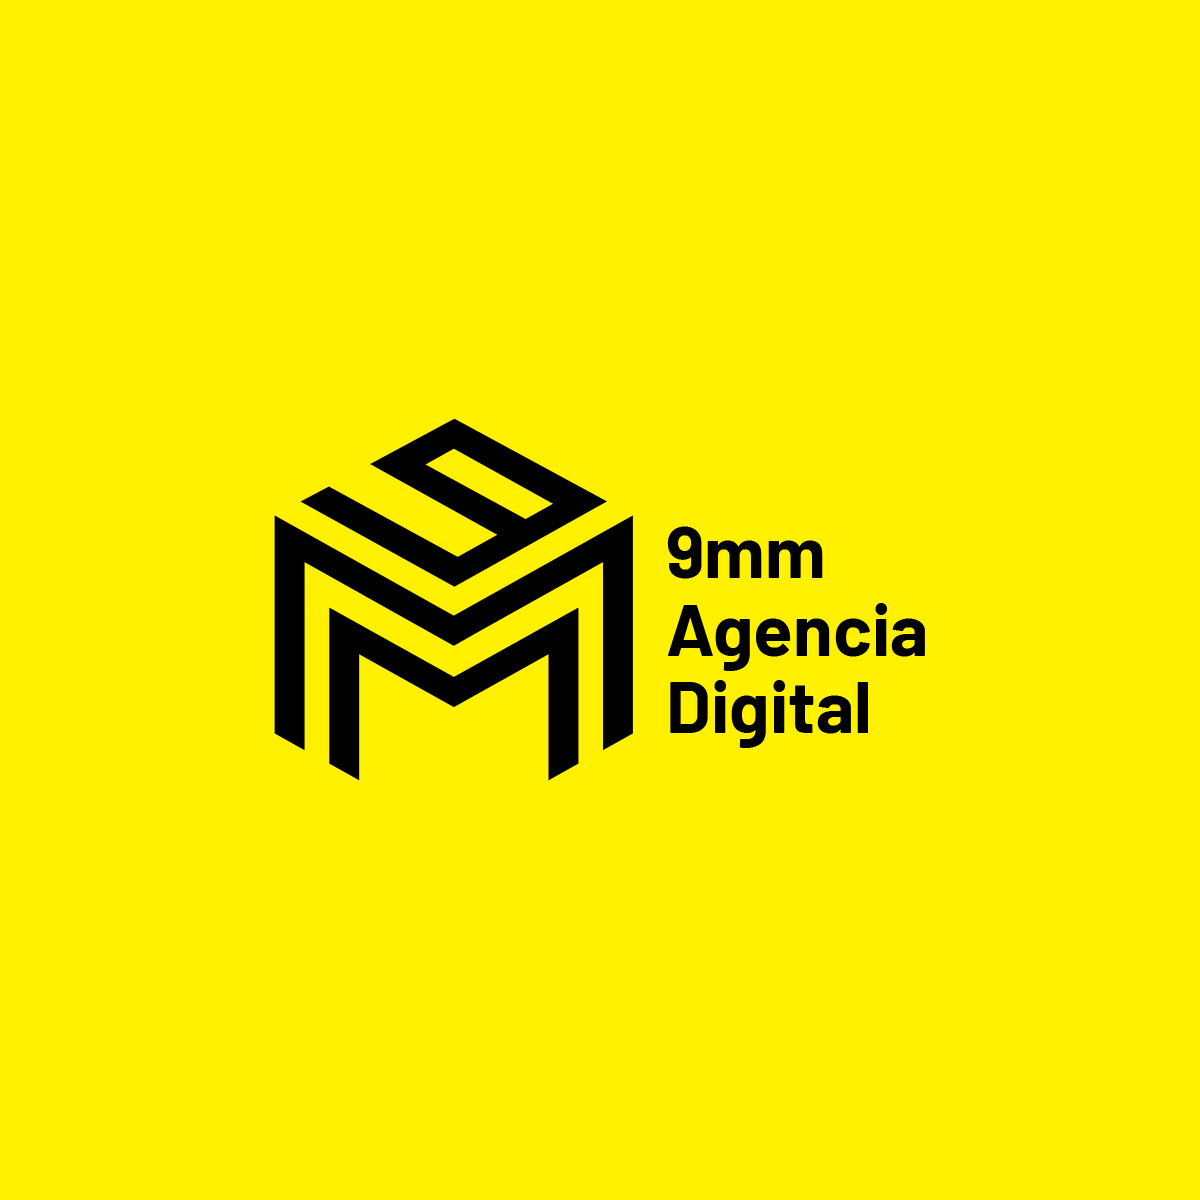 9mm Agencia digital